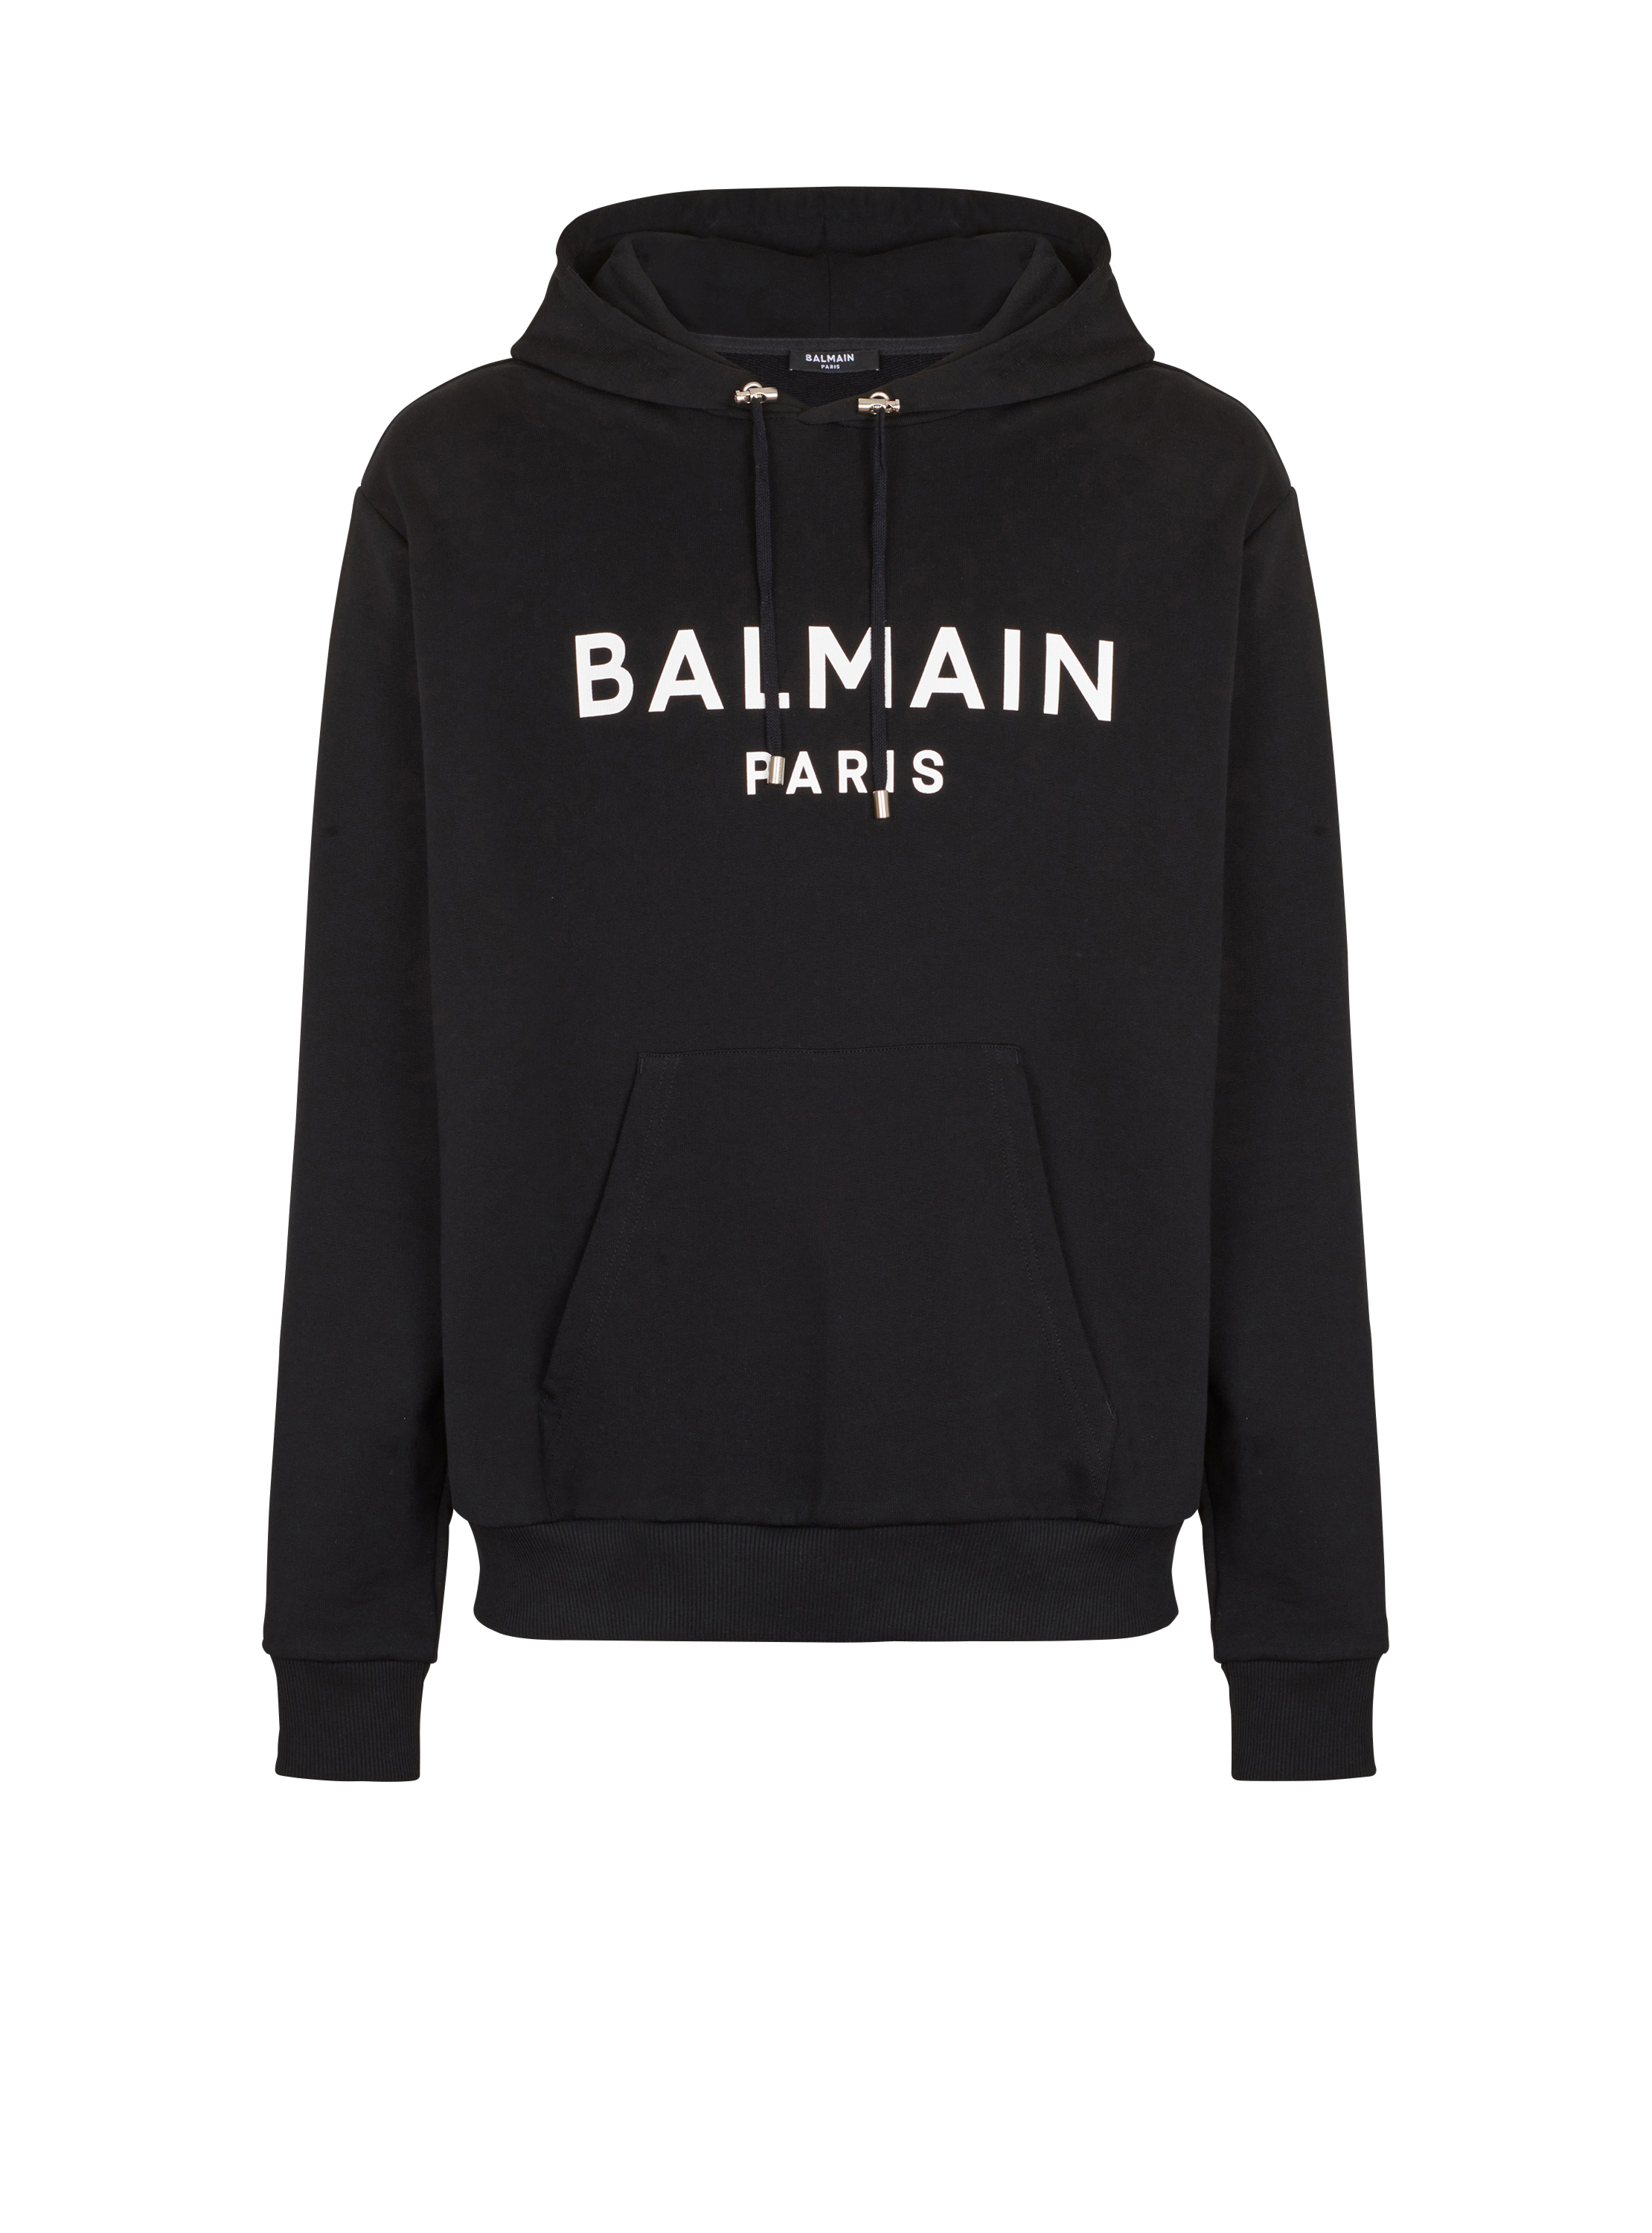 Cotton printed Balmain logo hoodie - Men